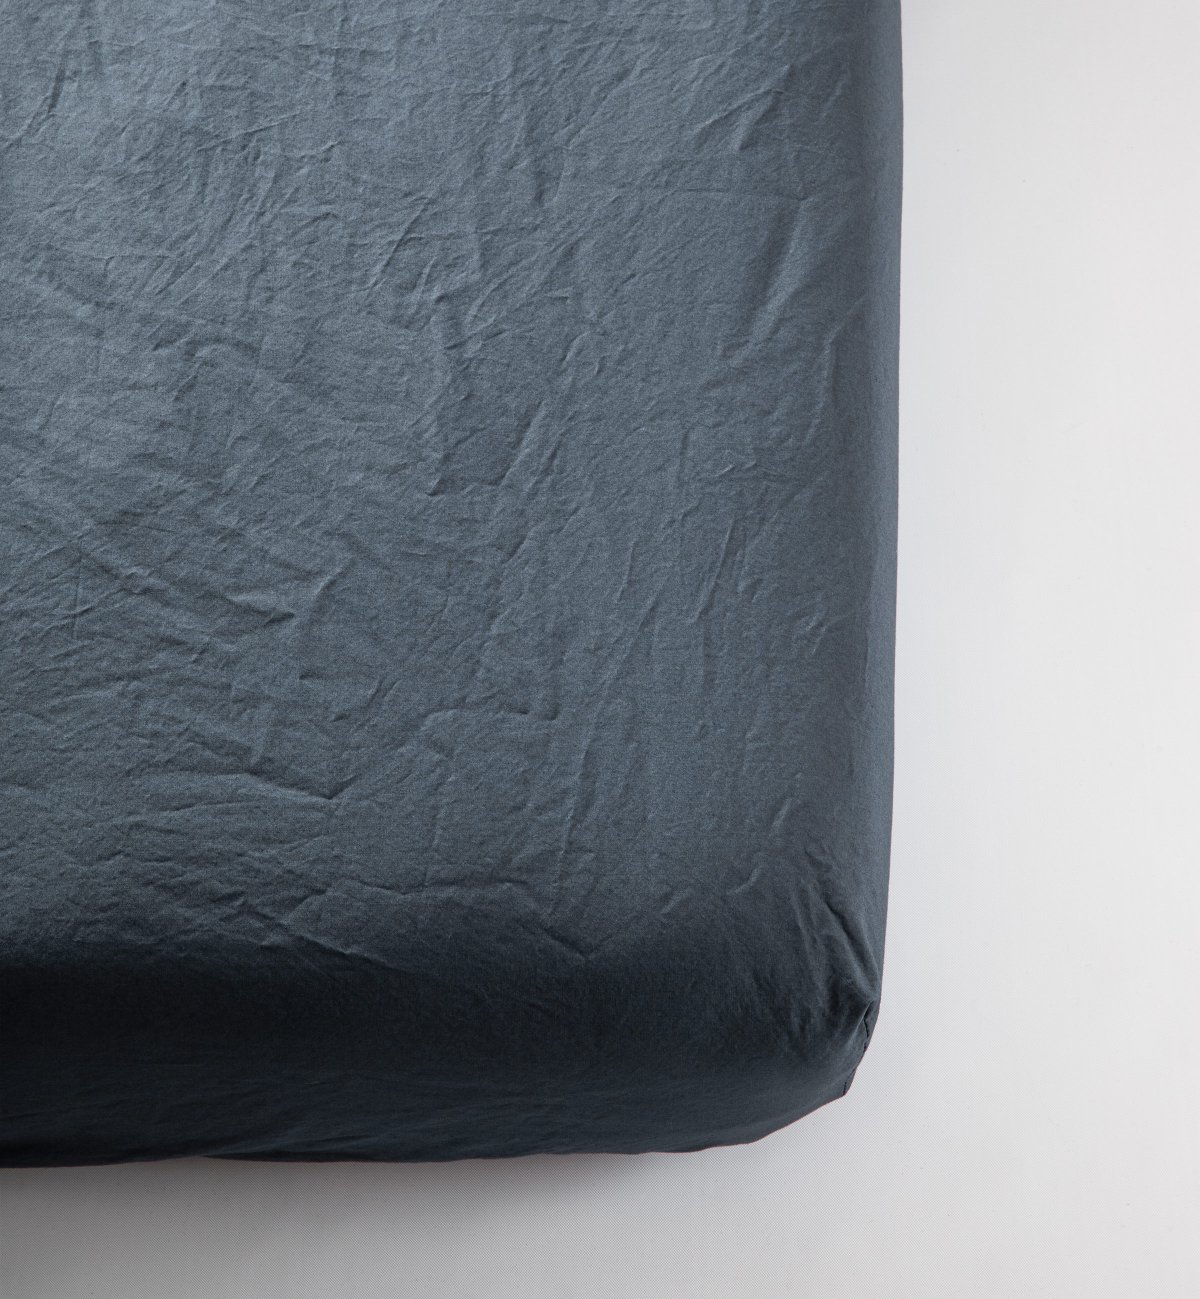 Spannbetttuch aus gewaschenem Bio-Baumwollperkal für Erwachsene